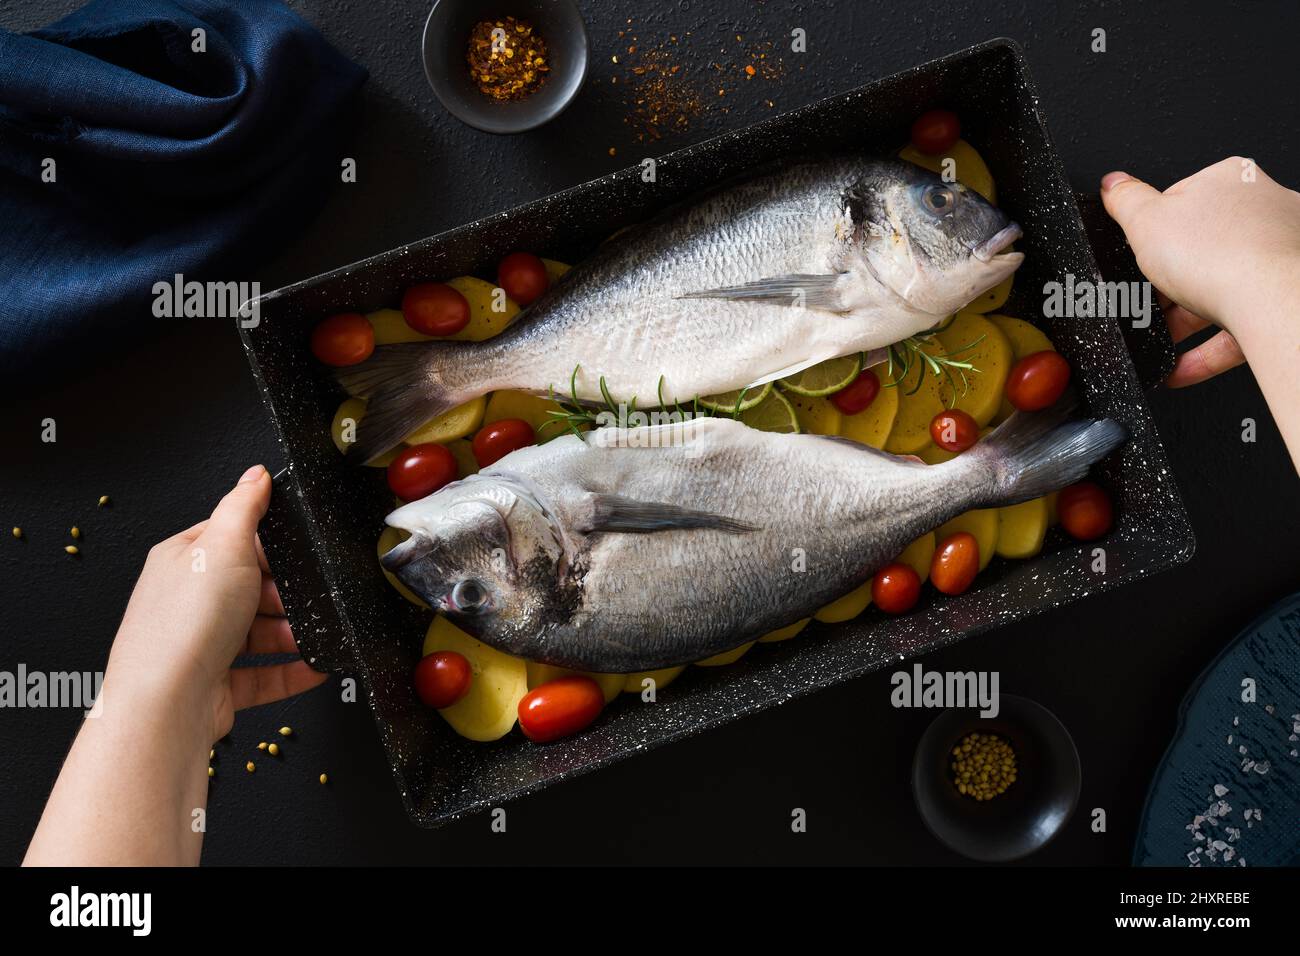 Fisch in einem Backblech mit Kartoffeln und Tomaten, fertig zum Backen  Stockfotografie - Alamy